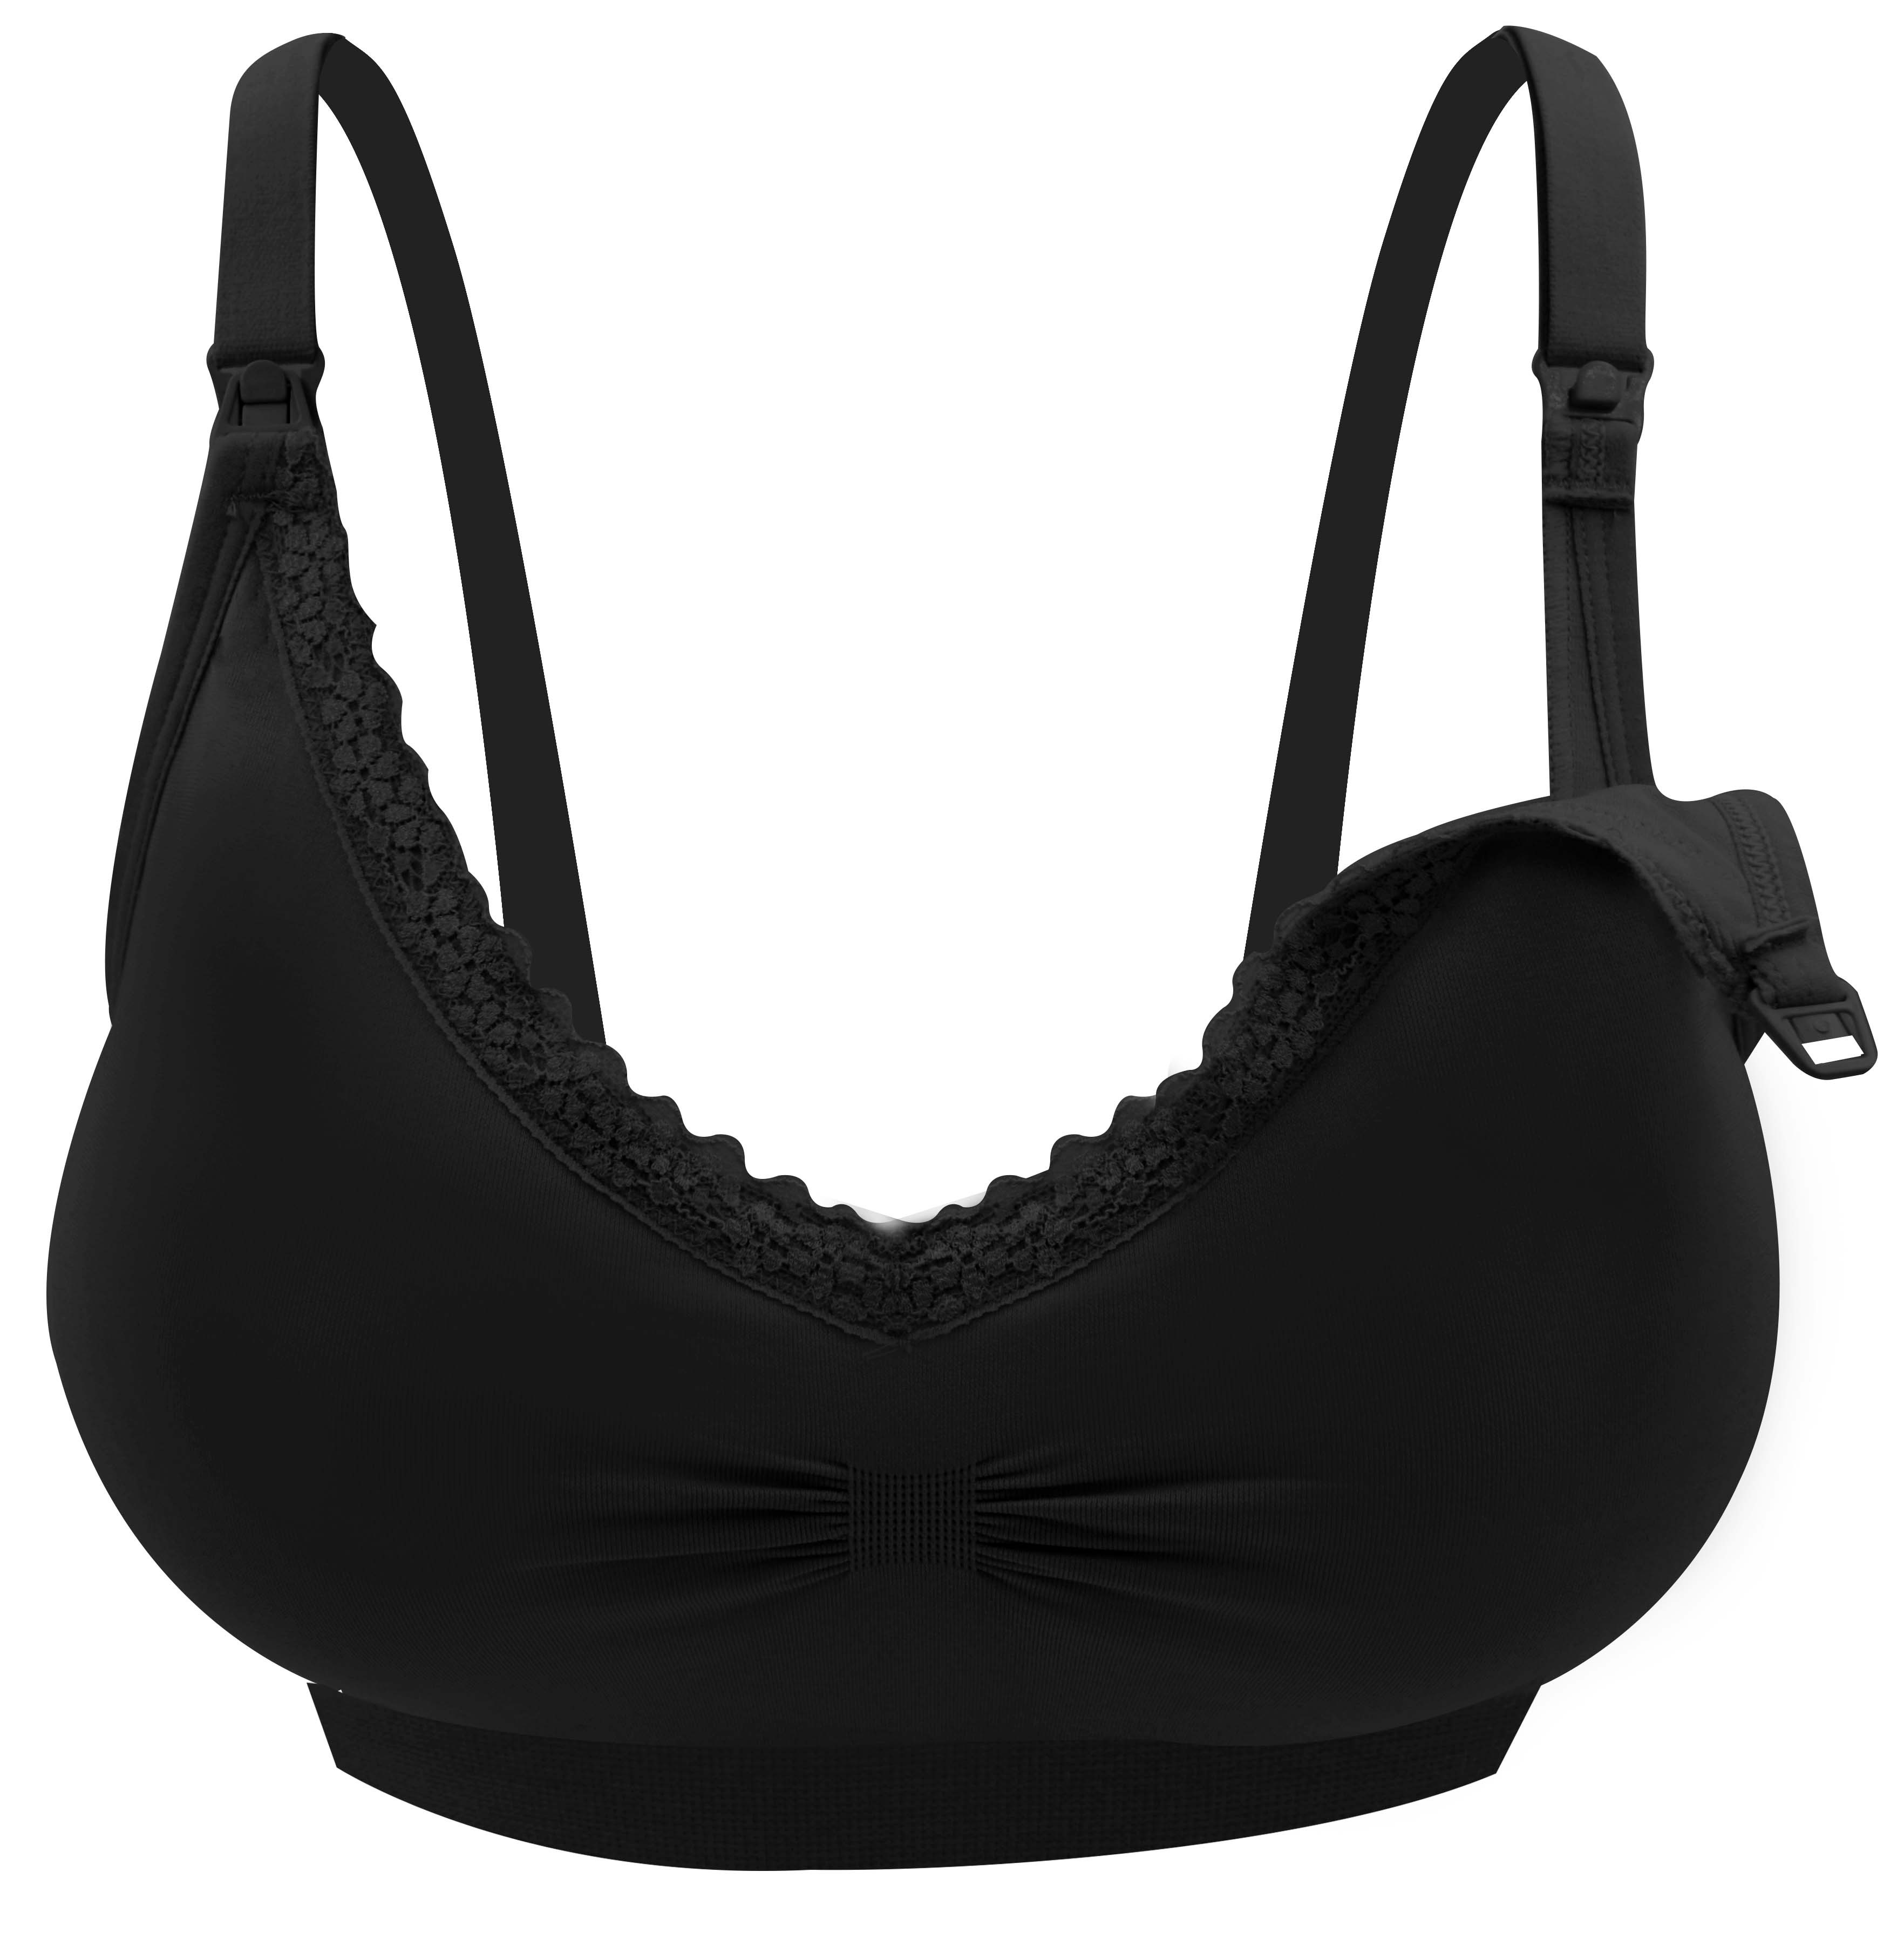 https://media.mamahood.com.sg/wilynn-llp/34352/lunavie-seamless-nursing-bra-free-bra-extender-black.jpg